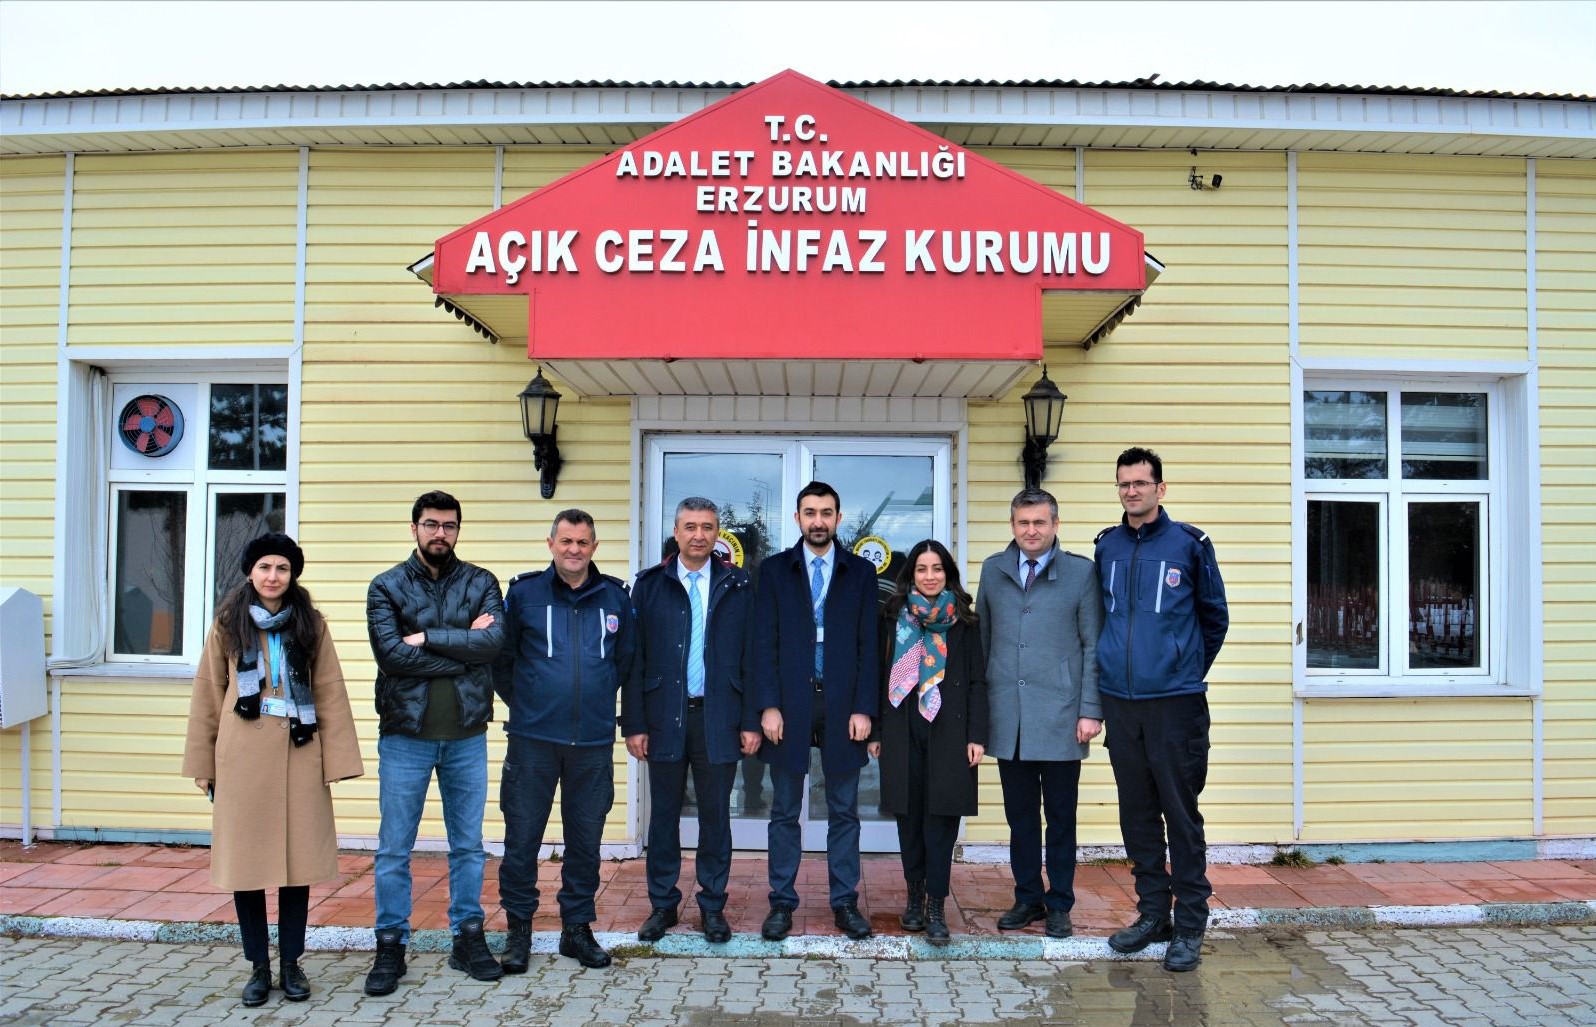 TİHEK Heyeti, Erzurum Açık Ceza İnfaz Kurumuna Habersiz Ziyaret Gerçekleştirdi 